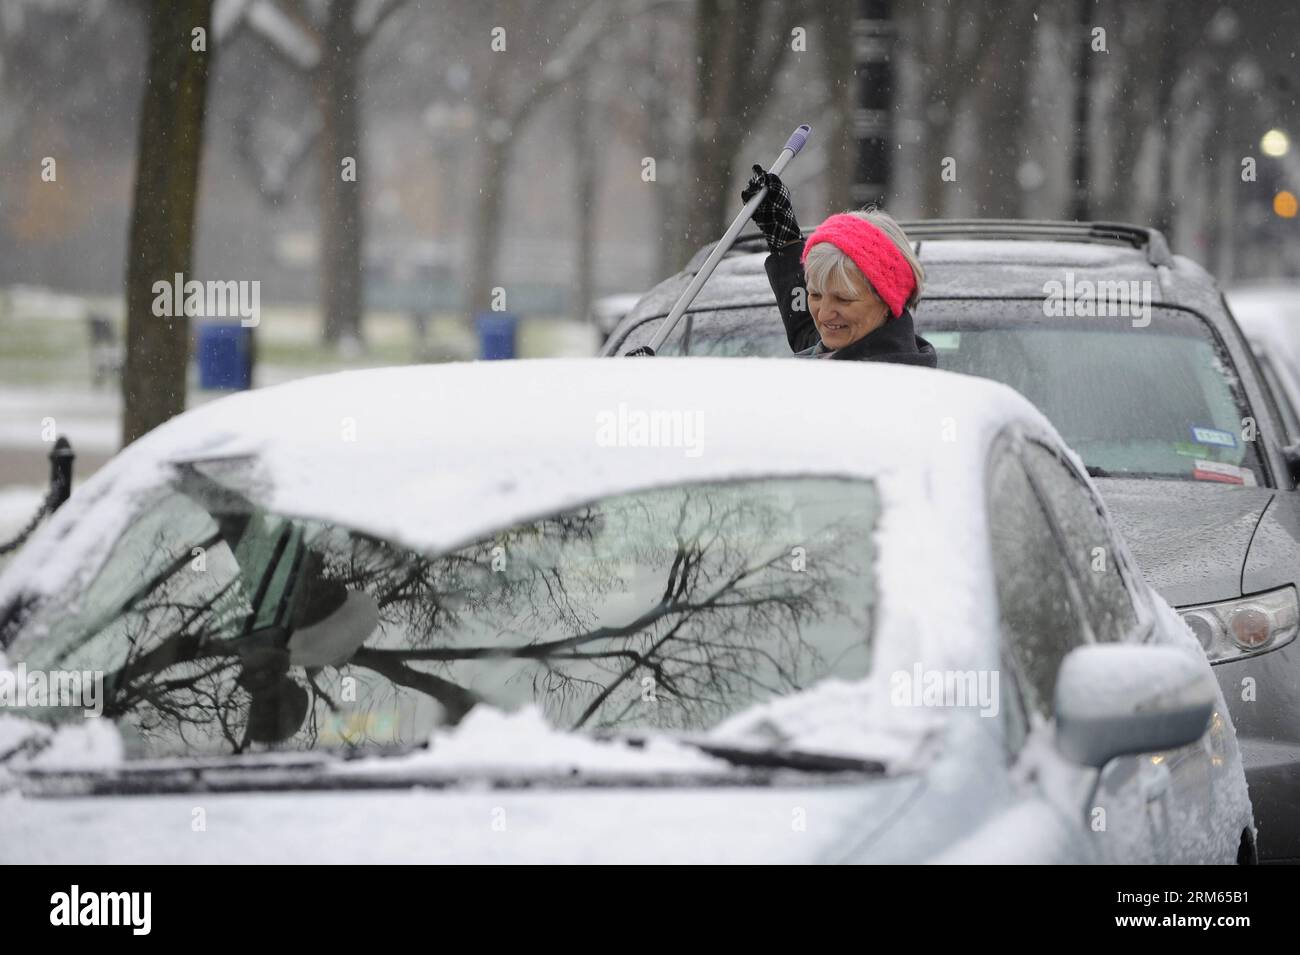 Bildnummer: 60808379  Datum: 08.12.2013  Copyright: imago/Xinhua     (131208) -- WASHINGTON D.C., Dec. 8, 2013 (Xinhua) -- A woman cleans snow on a car in Washington D.C., Dec. 8, 2013. (Xinhua/Zhang Jun) U.S.-WASHINGTON D.C.-SNOW PUBLICATIONxNOTxINxCHN Gesellschaft Wetter Winter Schnee xcb x0x 2013 quer Stock Photo